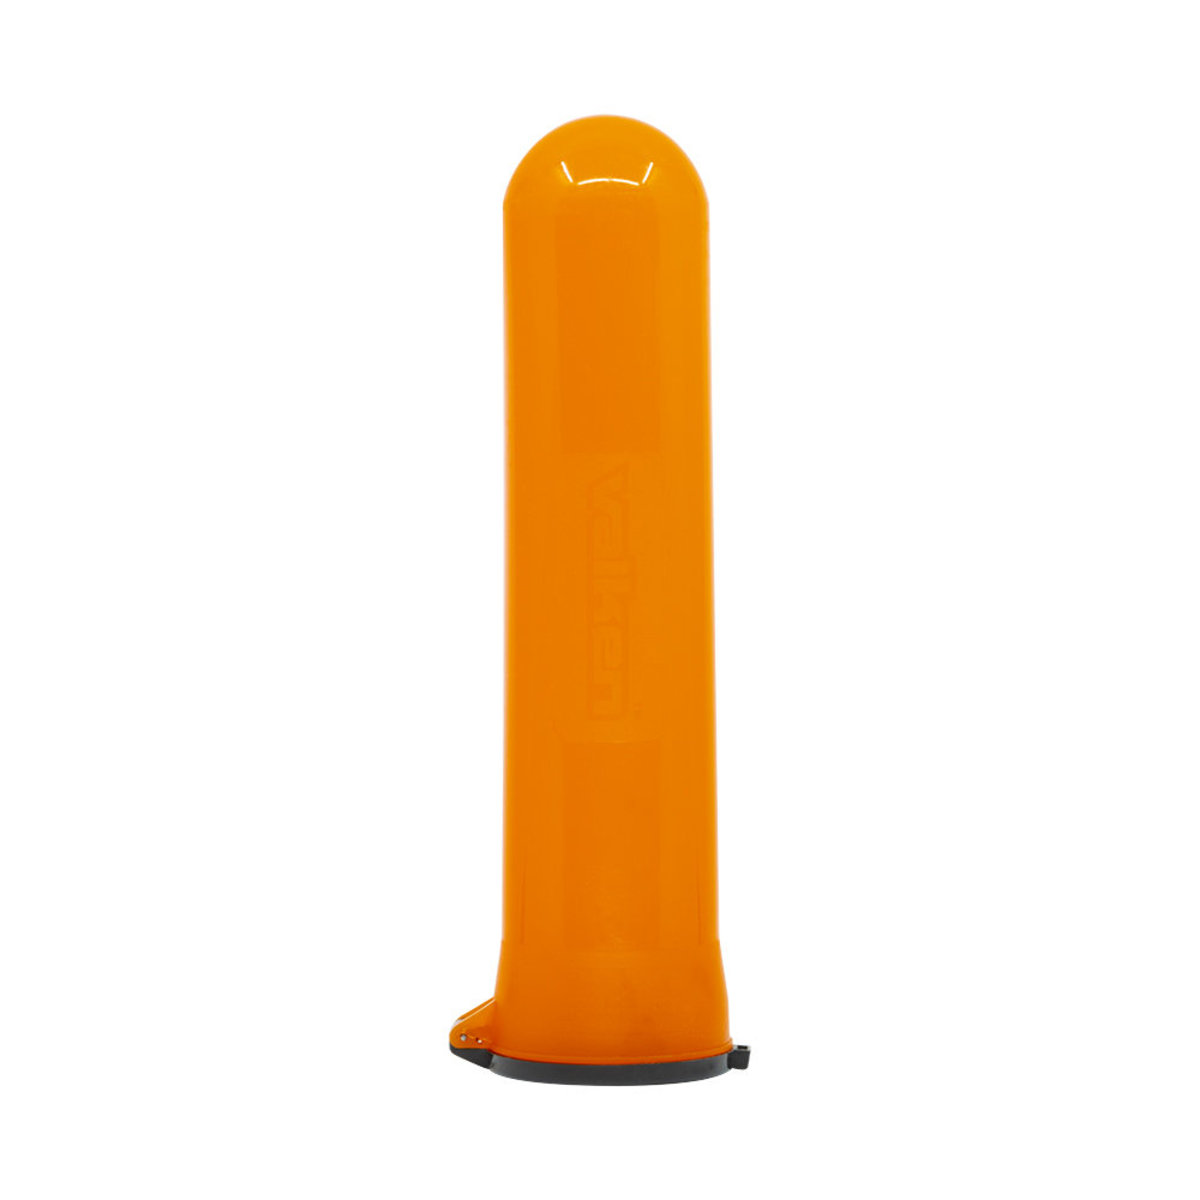 Valken "Flick Lid" 140Rd Paintball Pod - Bright Orange